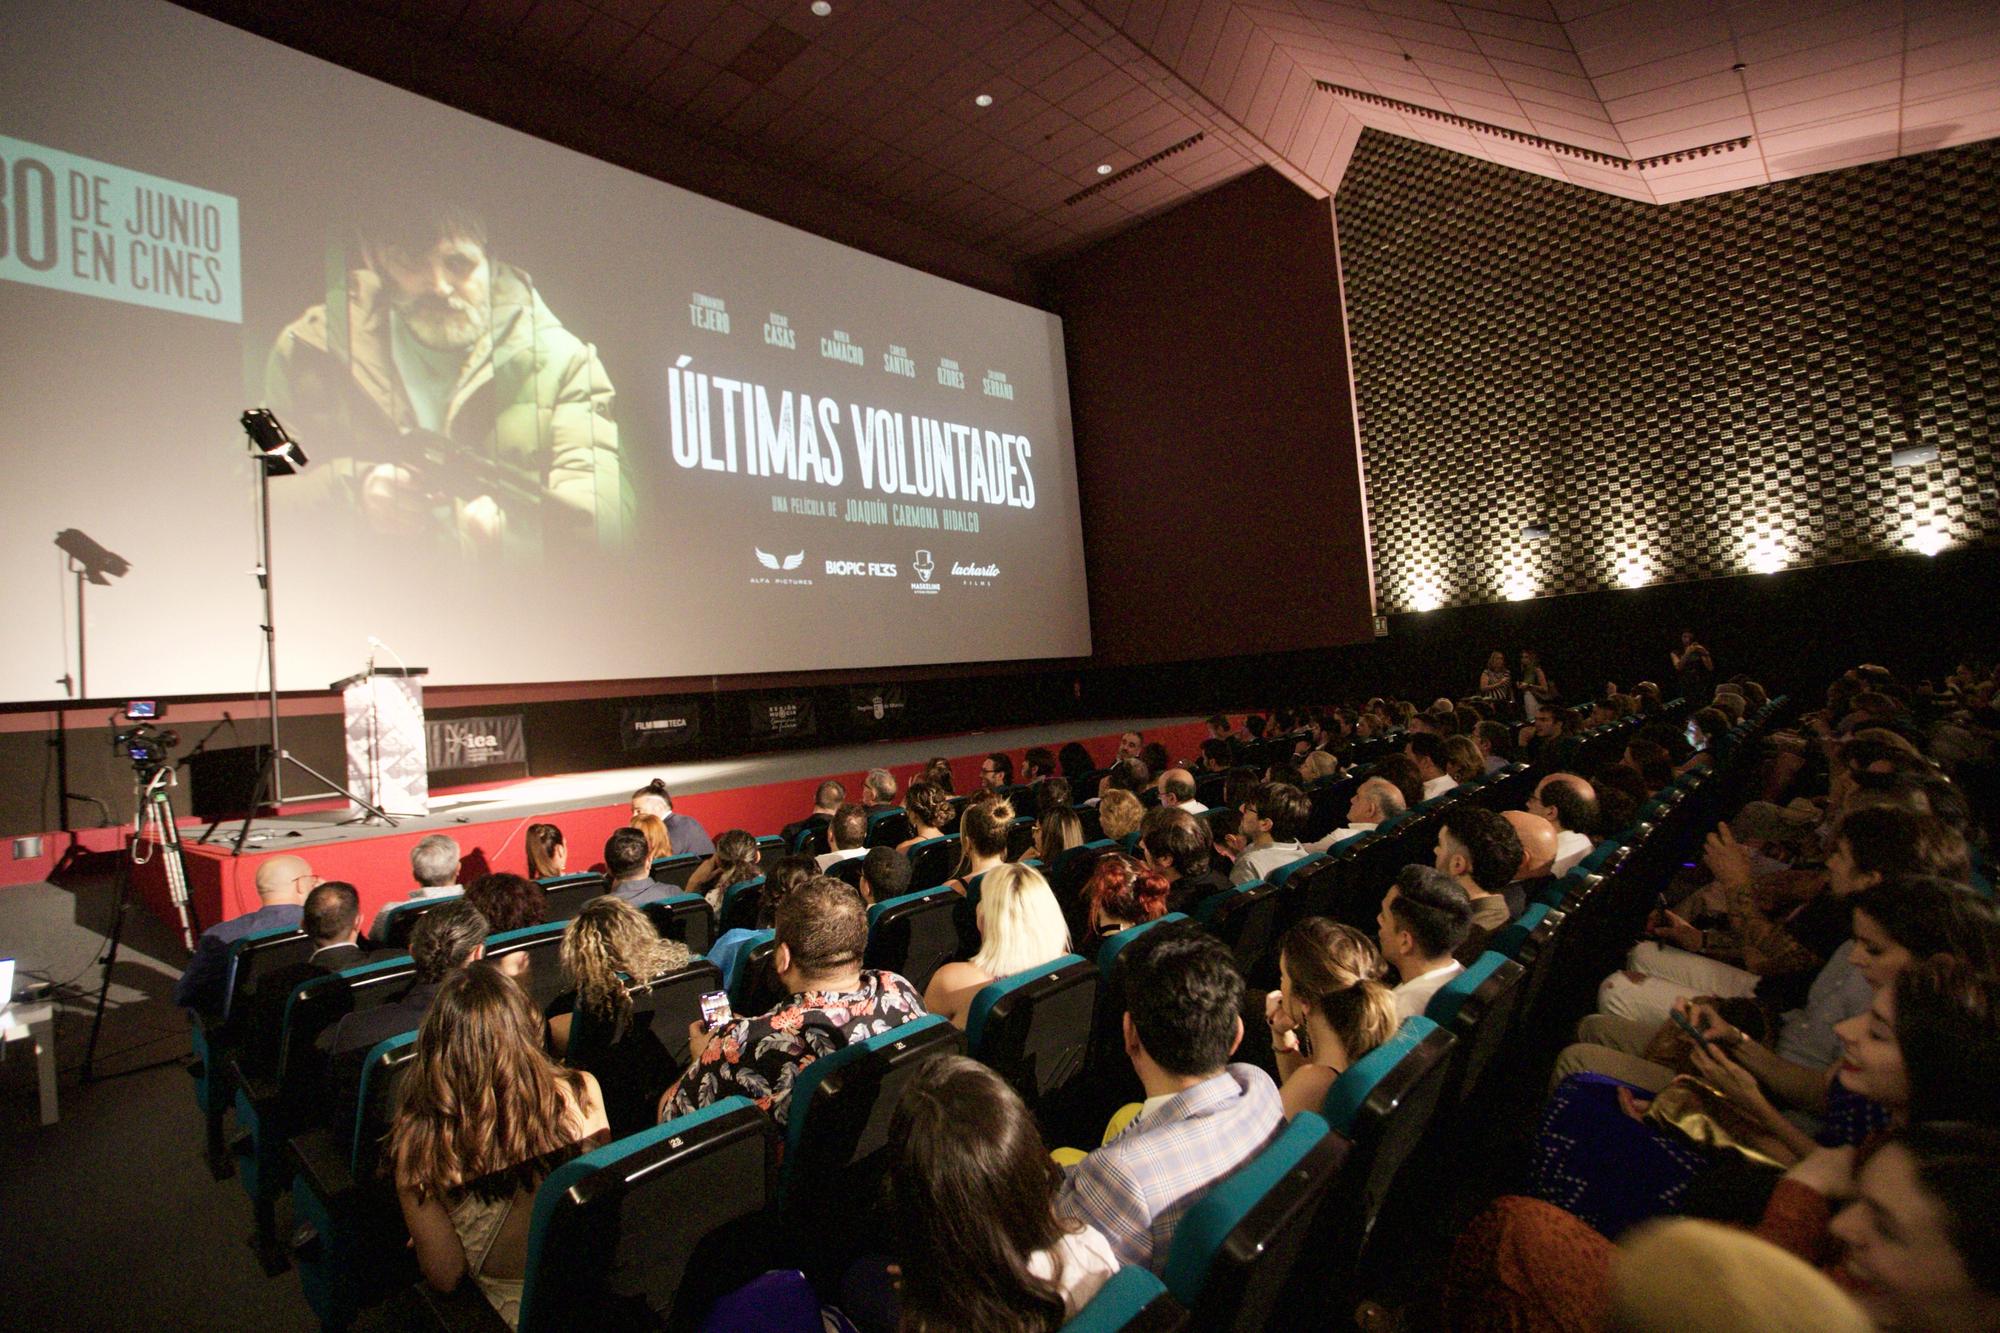 Las imágenes de la premiere de la película murciana 'Últimas voluntades'